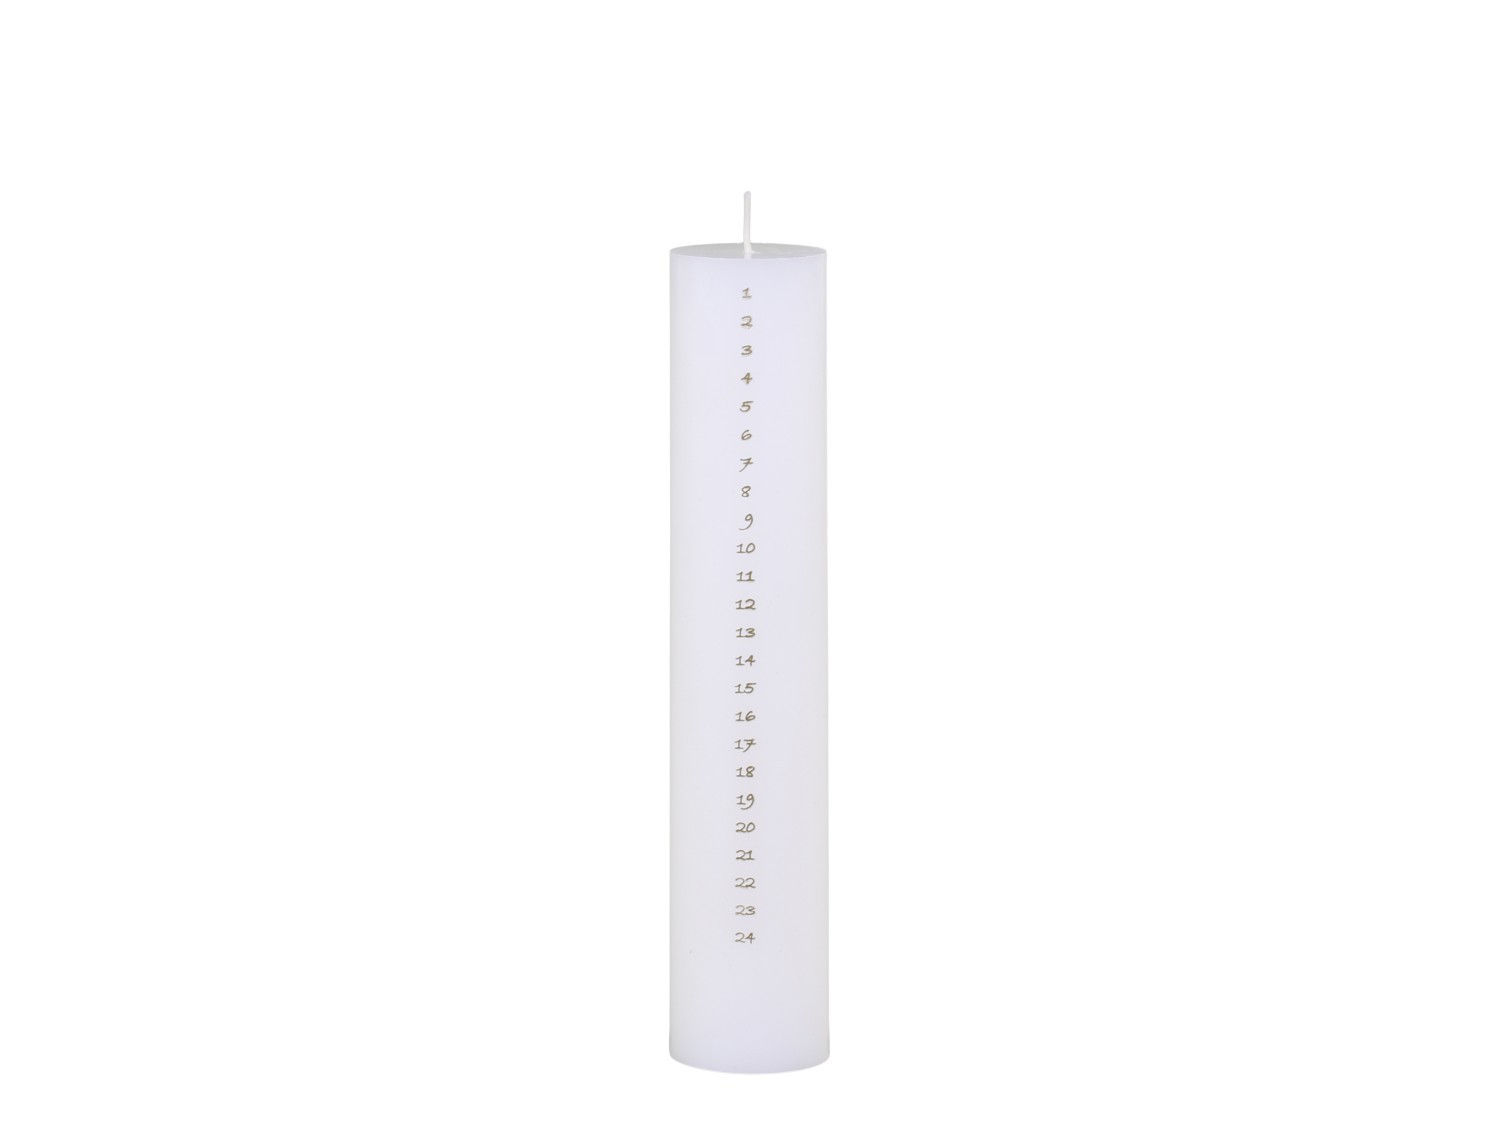 Bílá adventní svíčka s čísly 1- 24 Advent Candle - Ø 5*25cm / 60h 71083701 (71837-01)